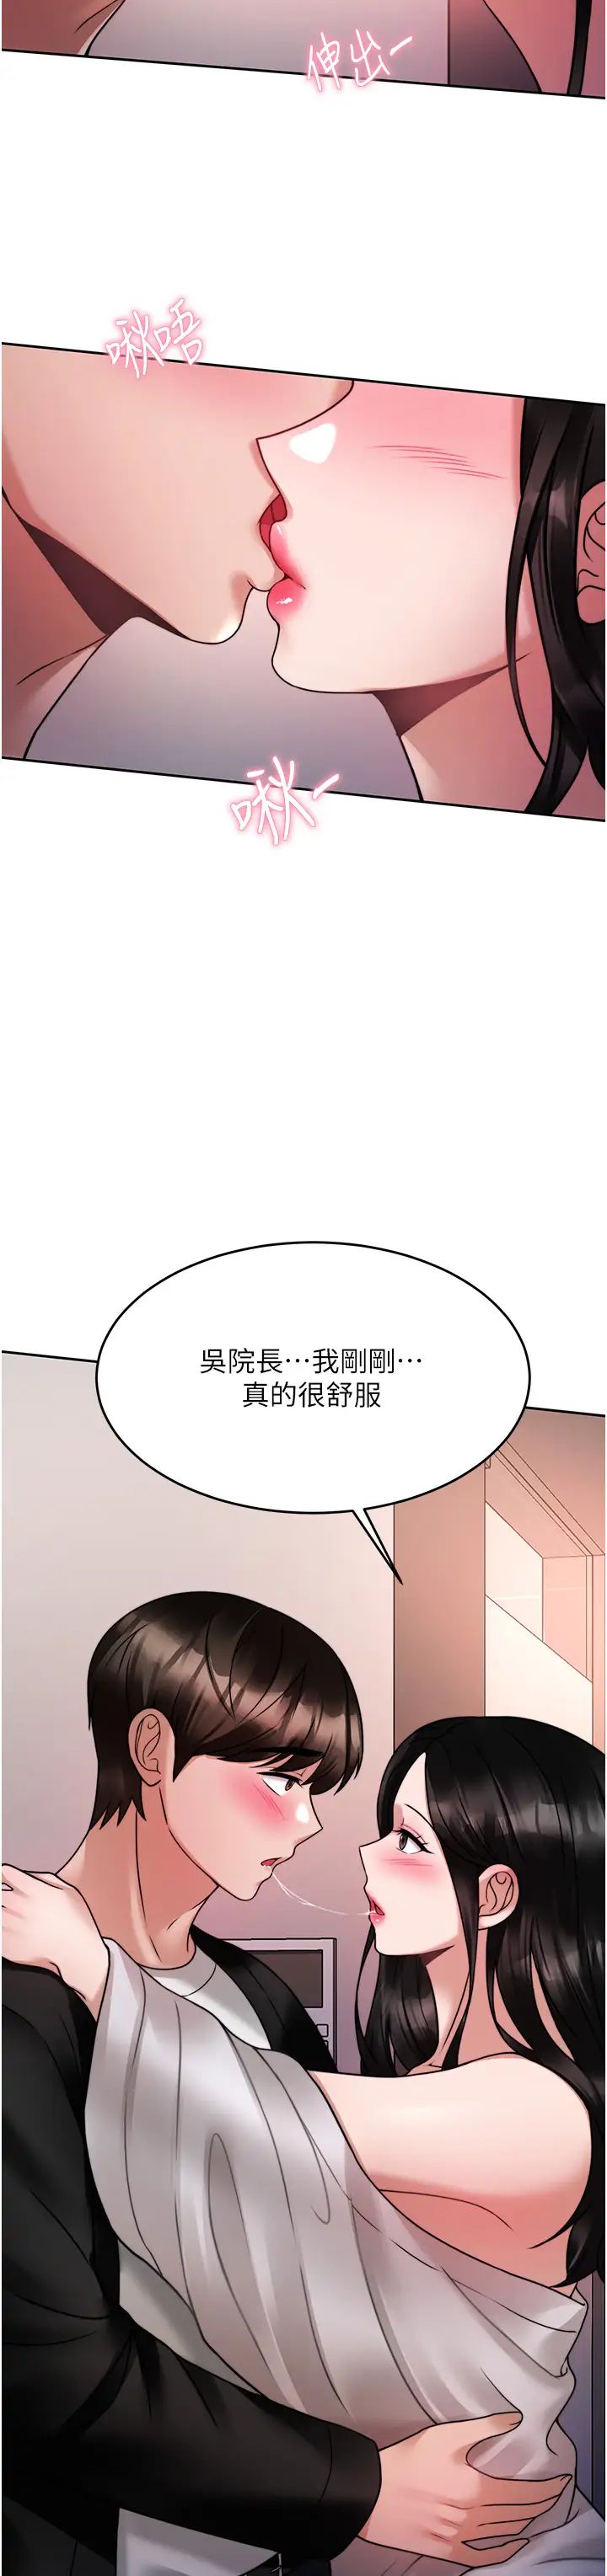 韩国污漫画 催眠治欲師 第19话性感诱人的小母狗 23